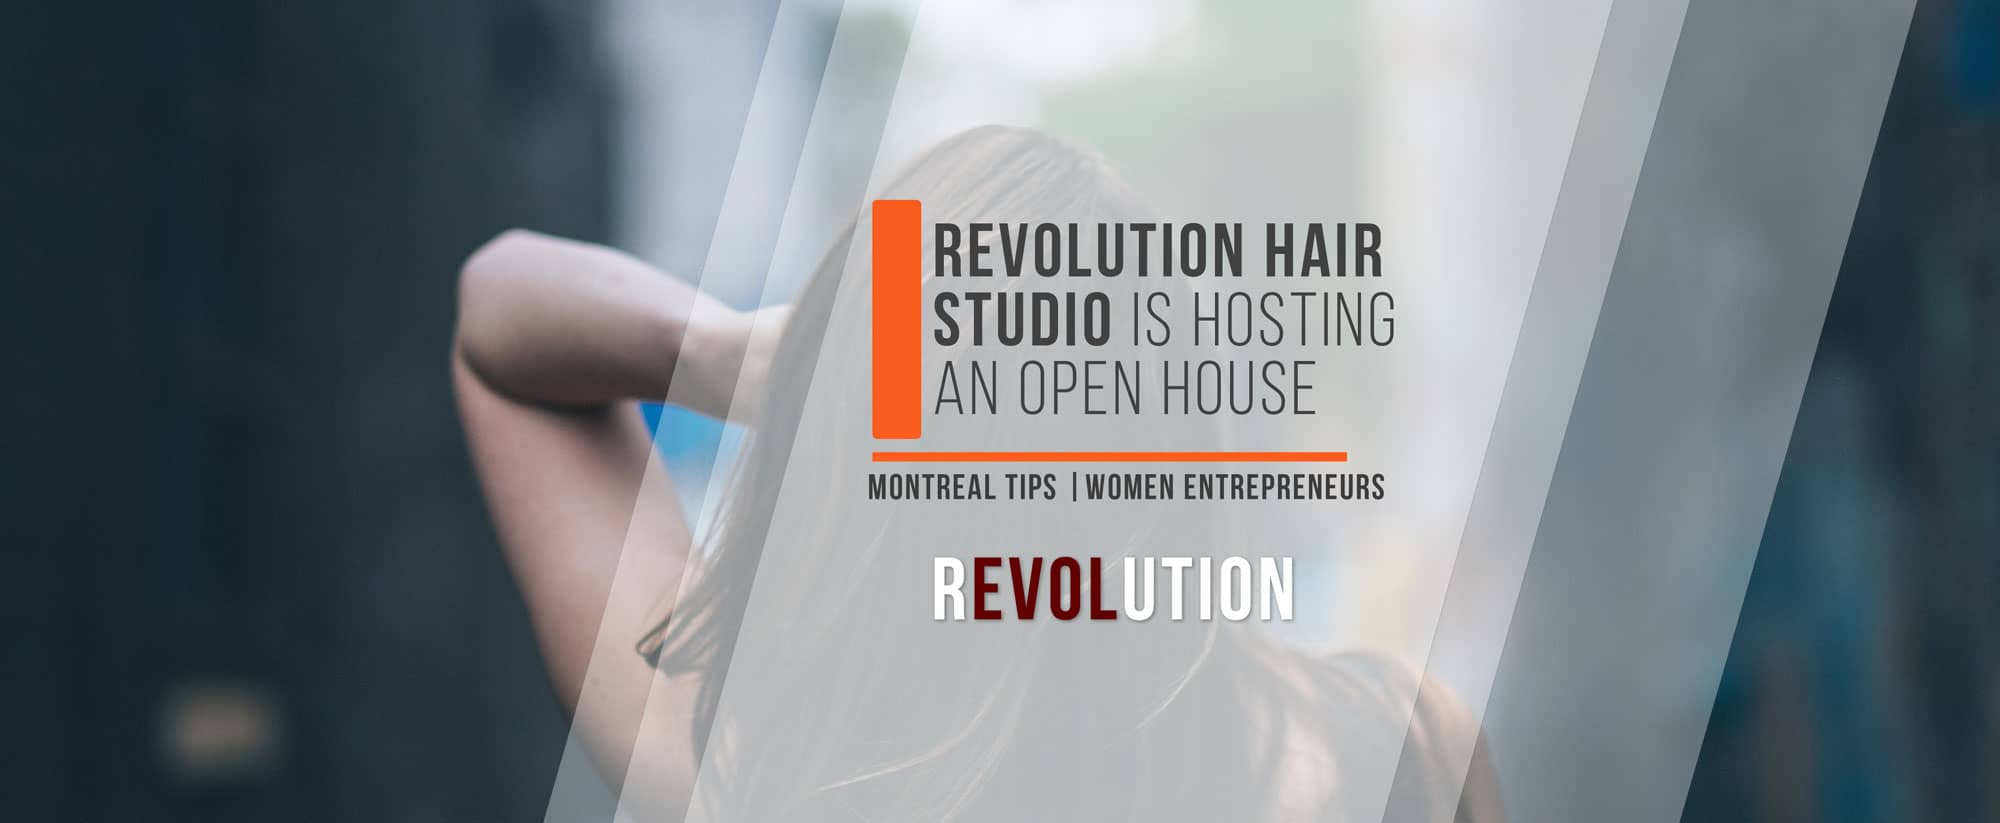 Revolution Hair Studio is hosting an open house